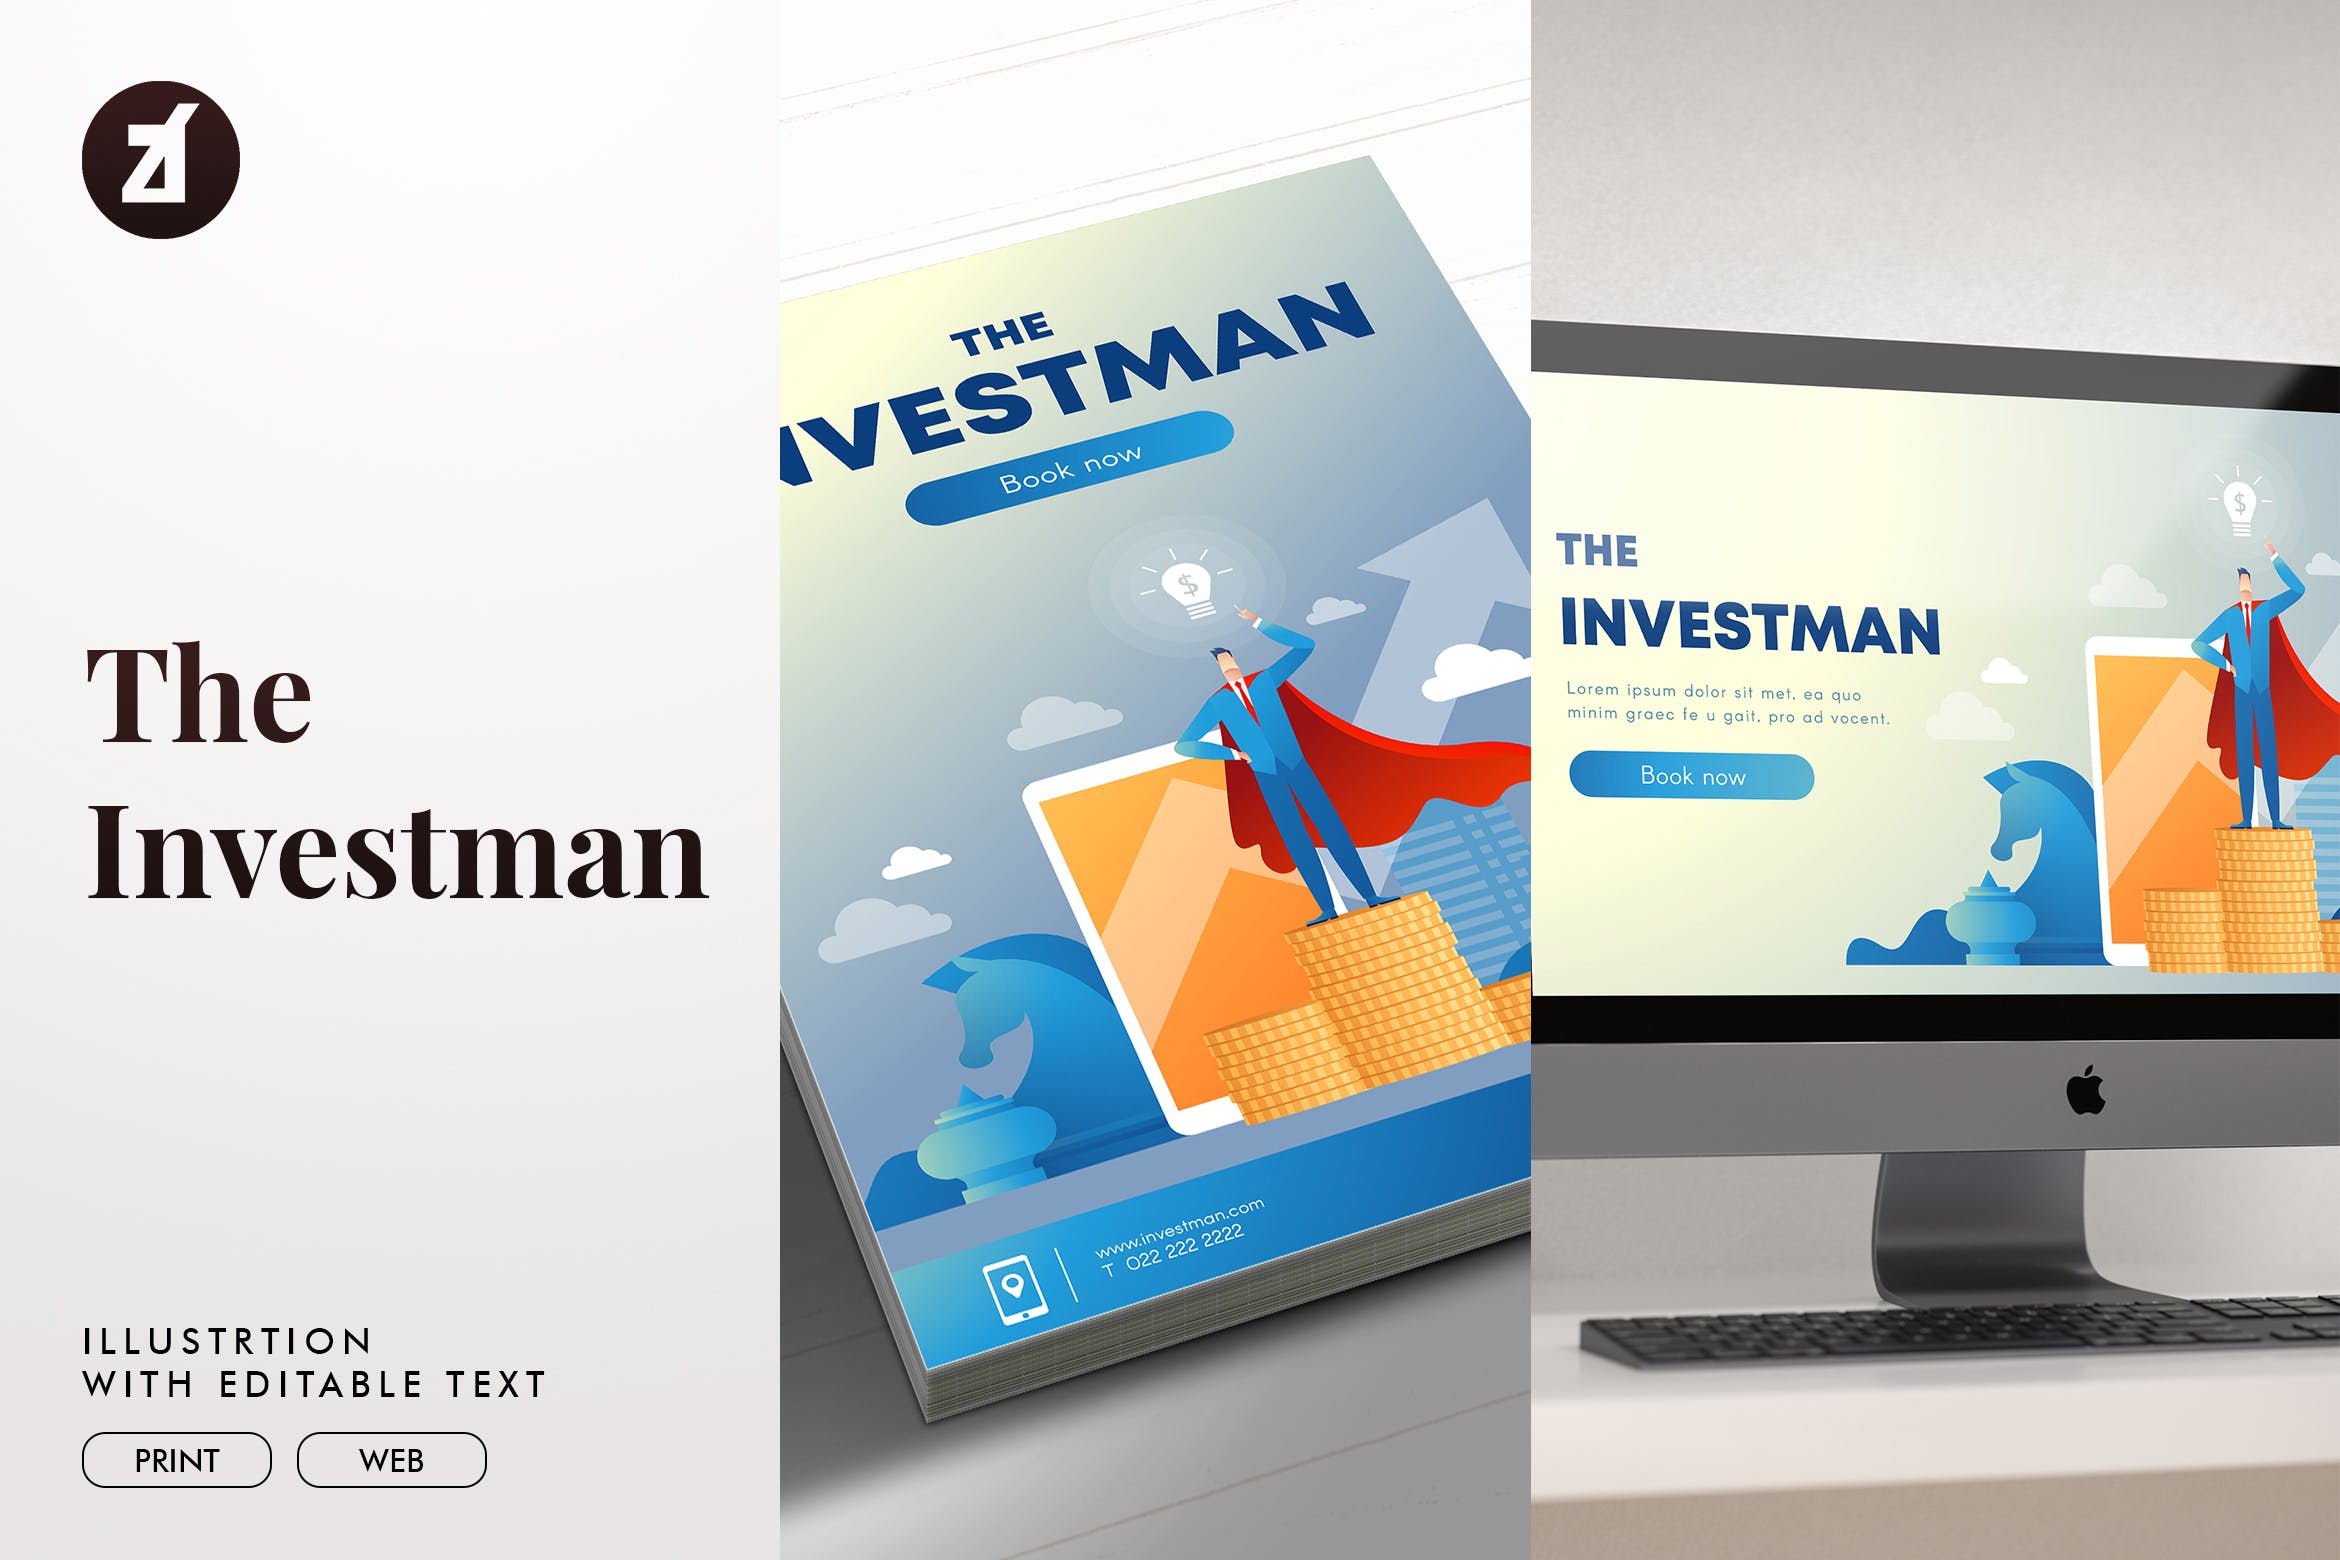 投资者主题矢量16设计网精选概念插画素材 The investman illustration with text layout插图